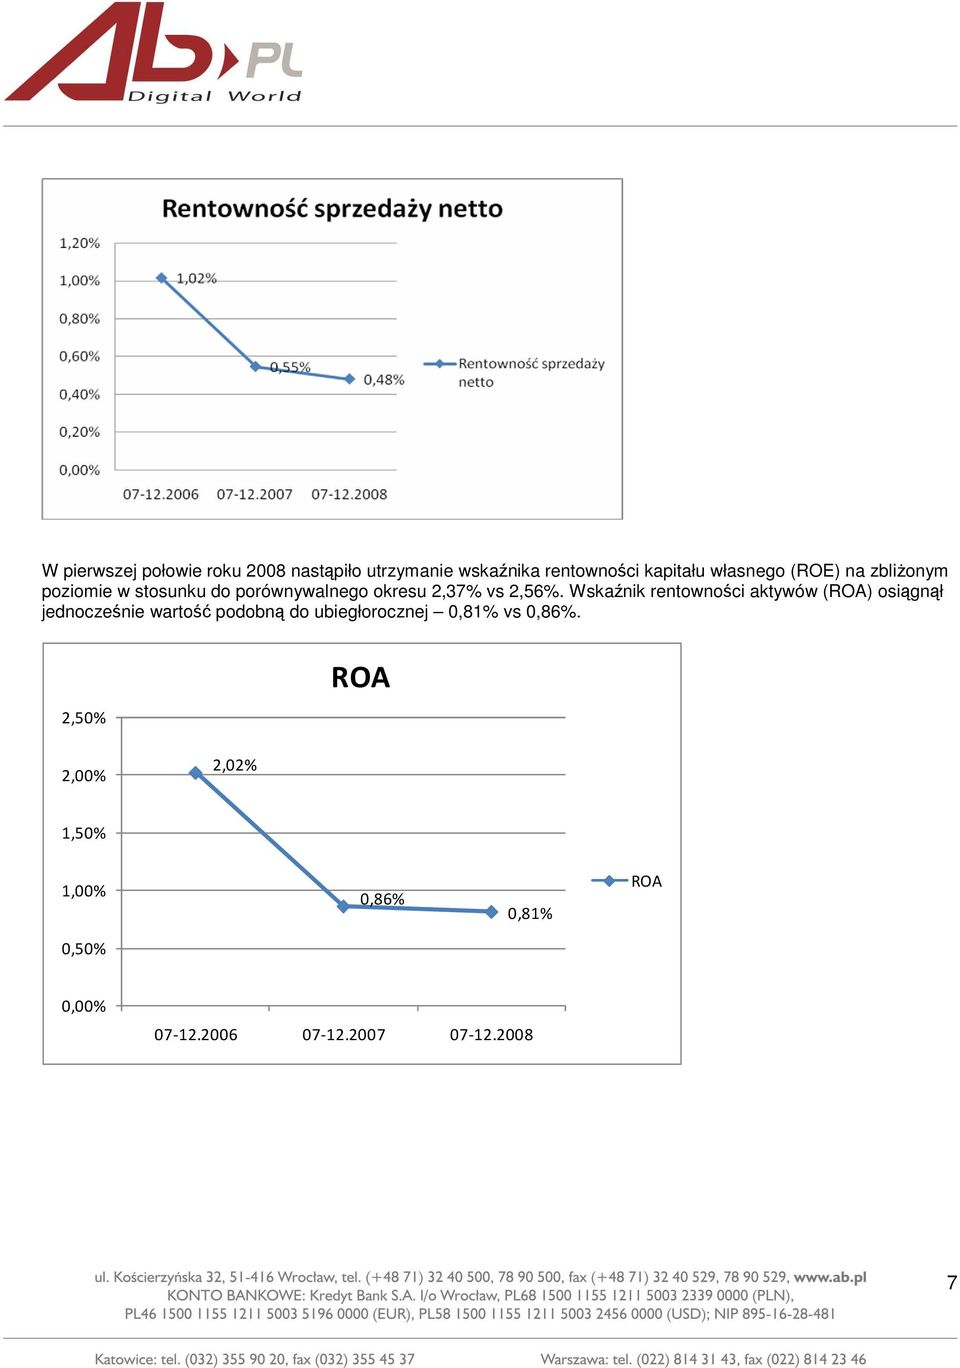 Wskaźnik rentowności aktywów (ROA) osiągnął jednocześnie wartość podobną do ubiegłorocznej